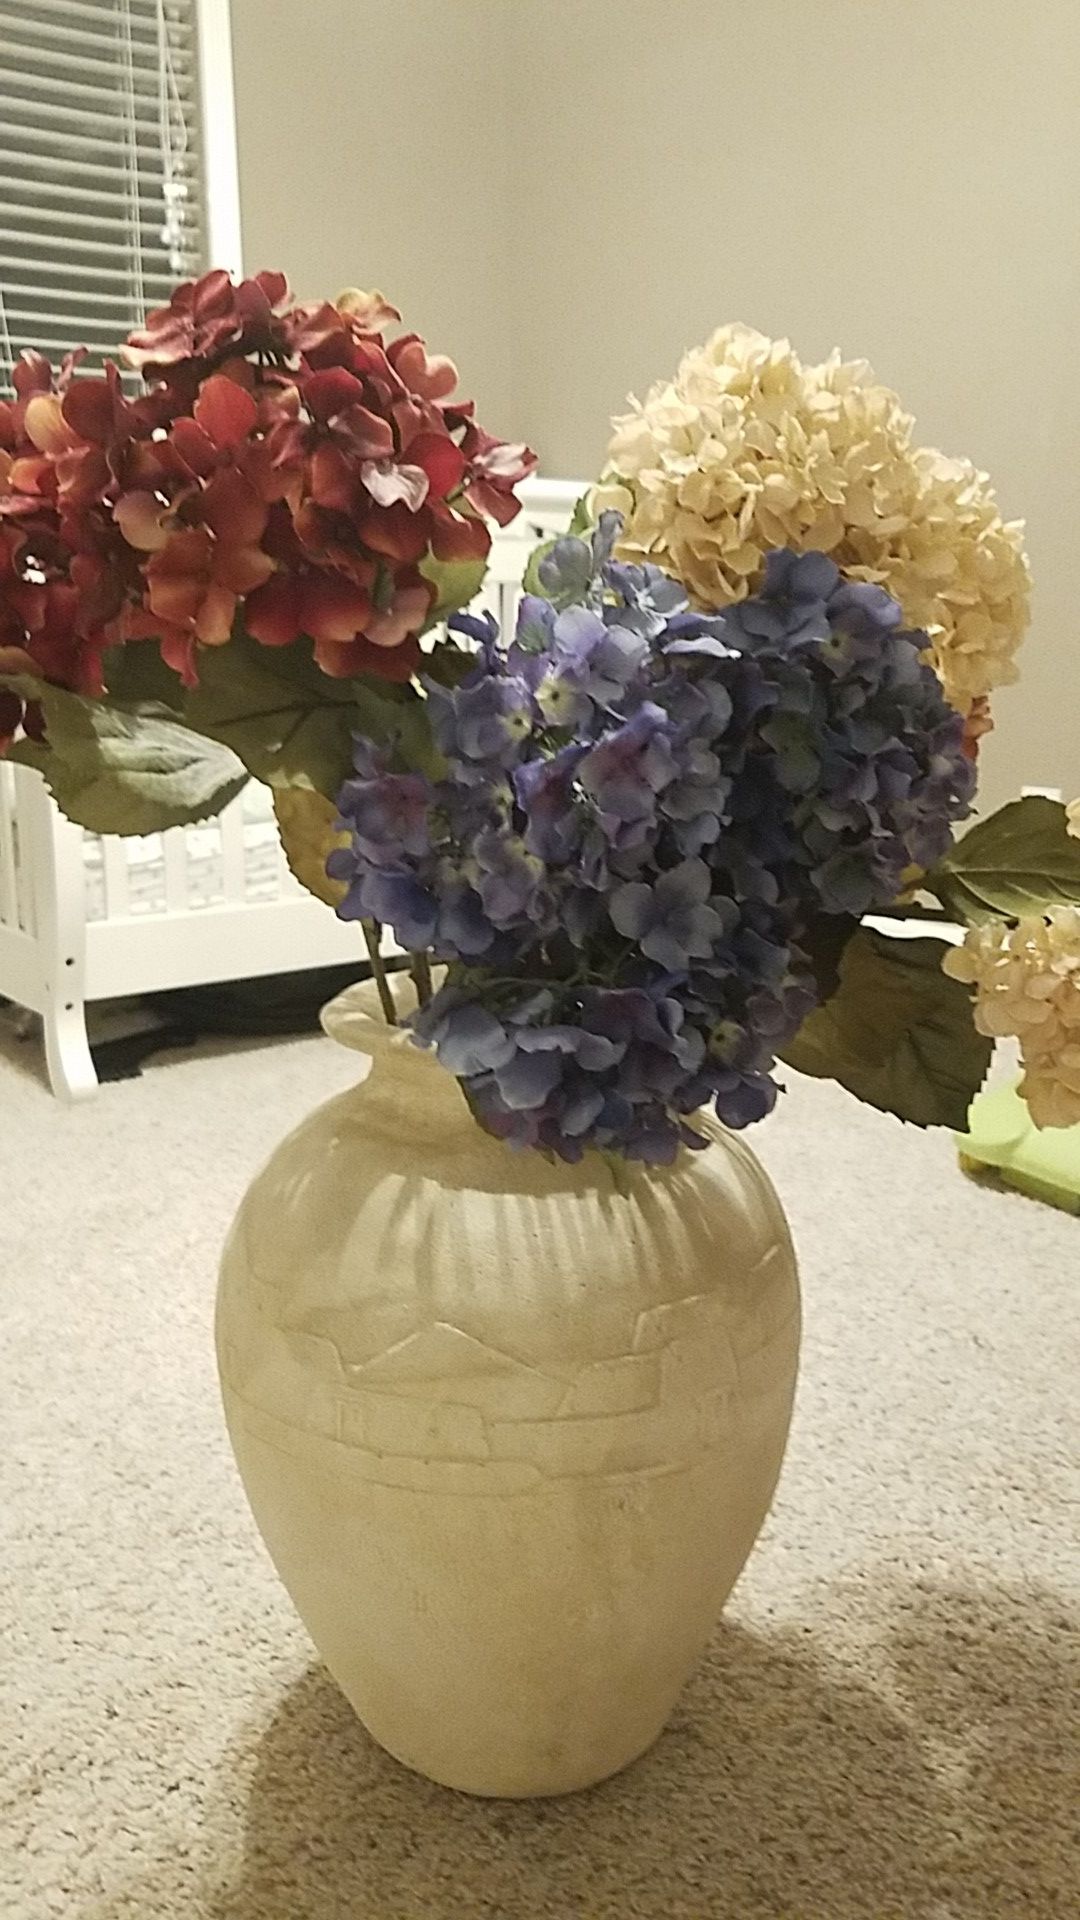 Pot plus flowers